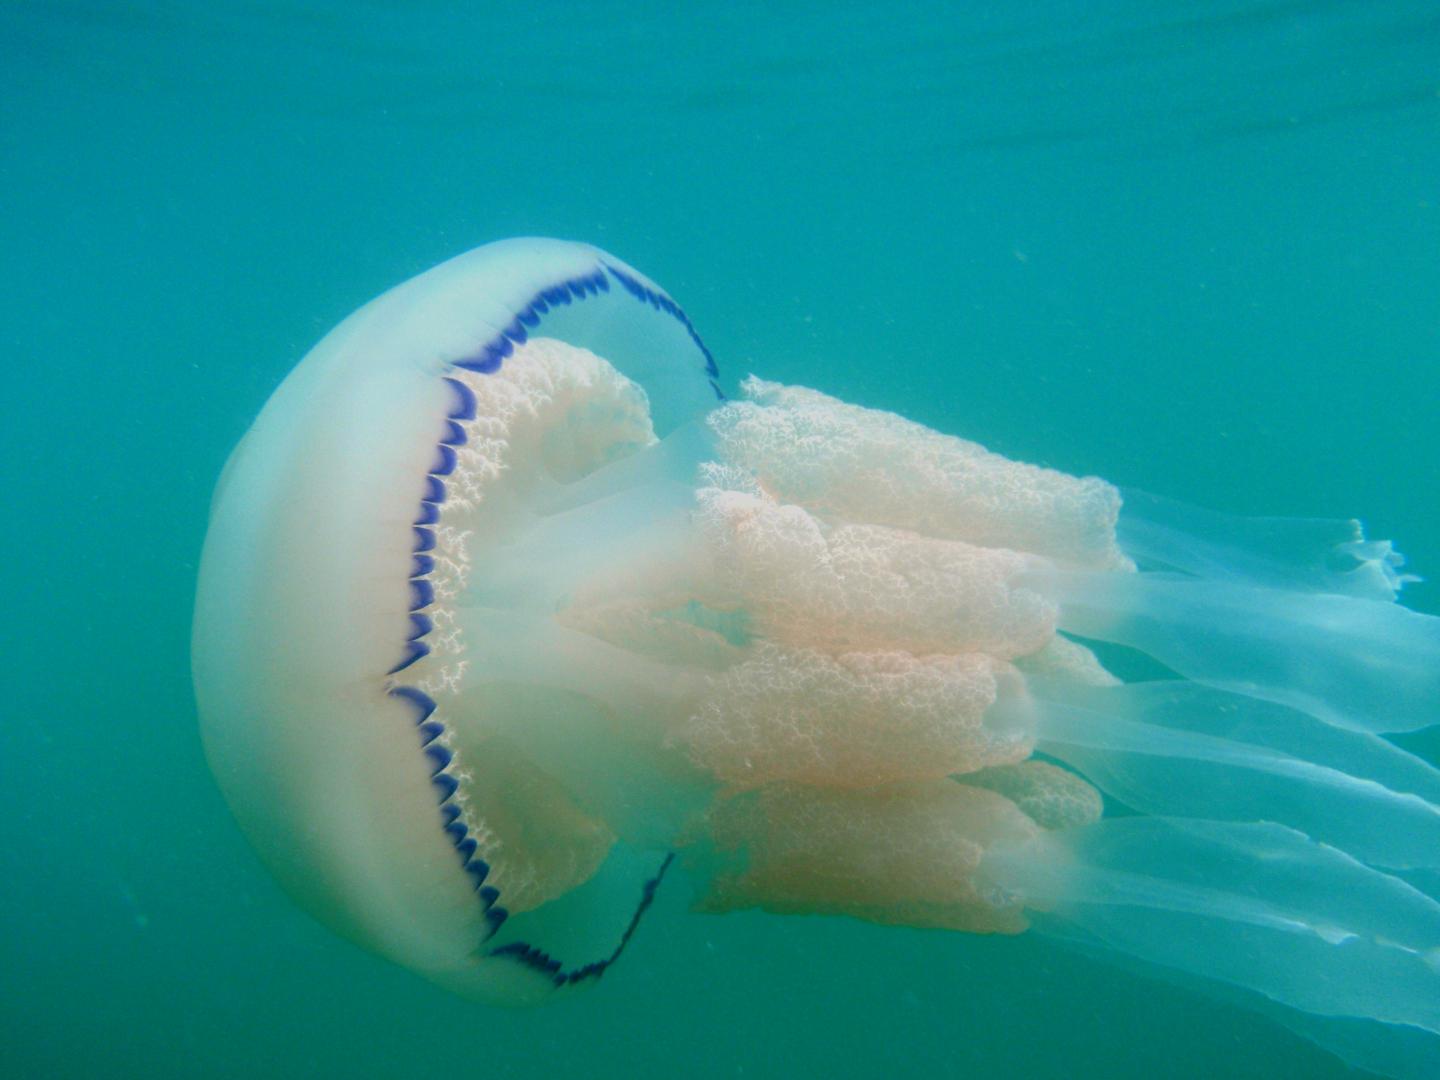 A Barrel Jellyfish